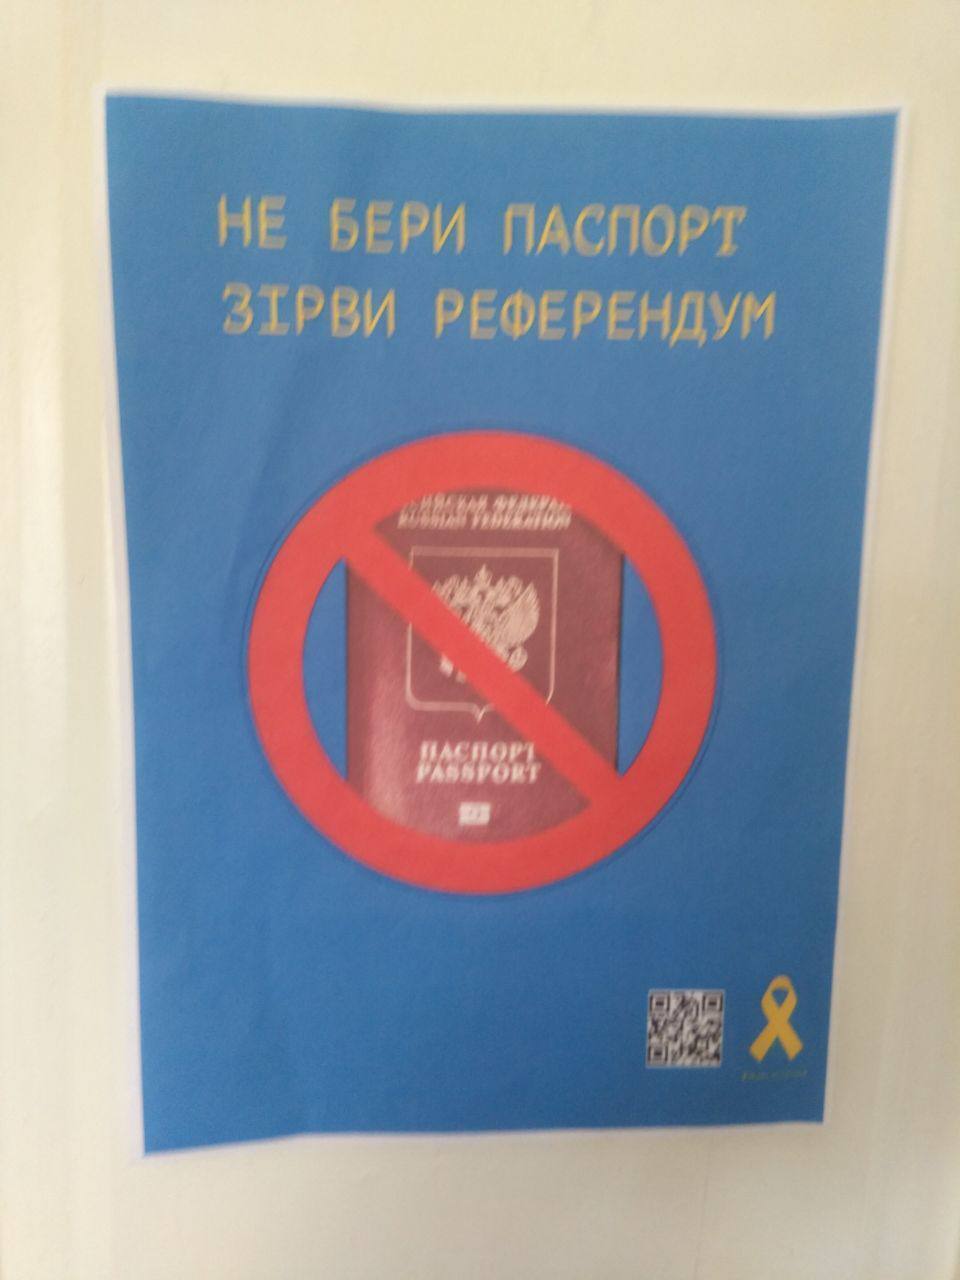 Луганск просыпается! В городе устроили смелую акцию против паспортов и "референдума" РФ. Фото